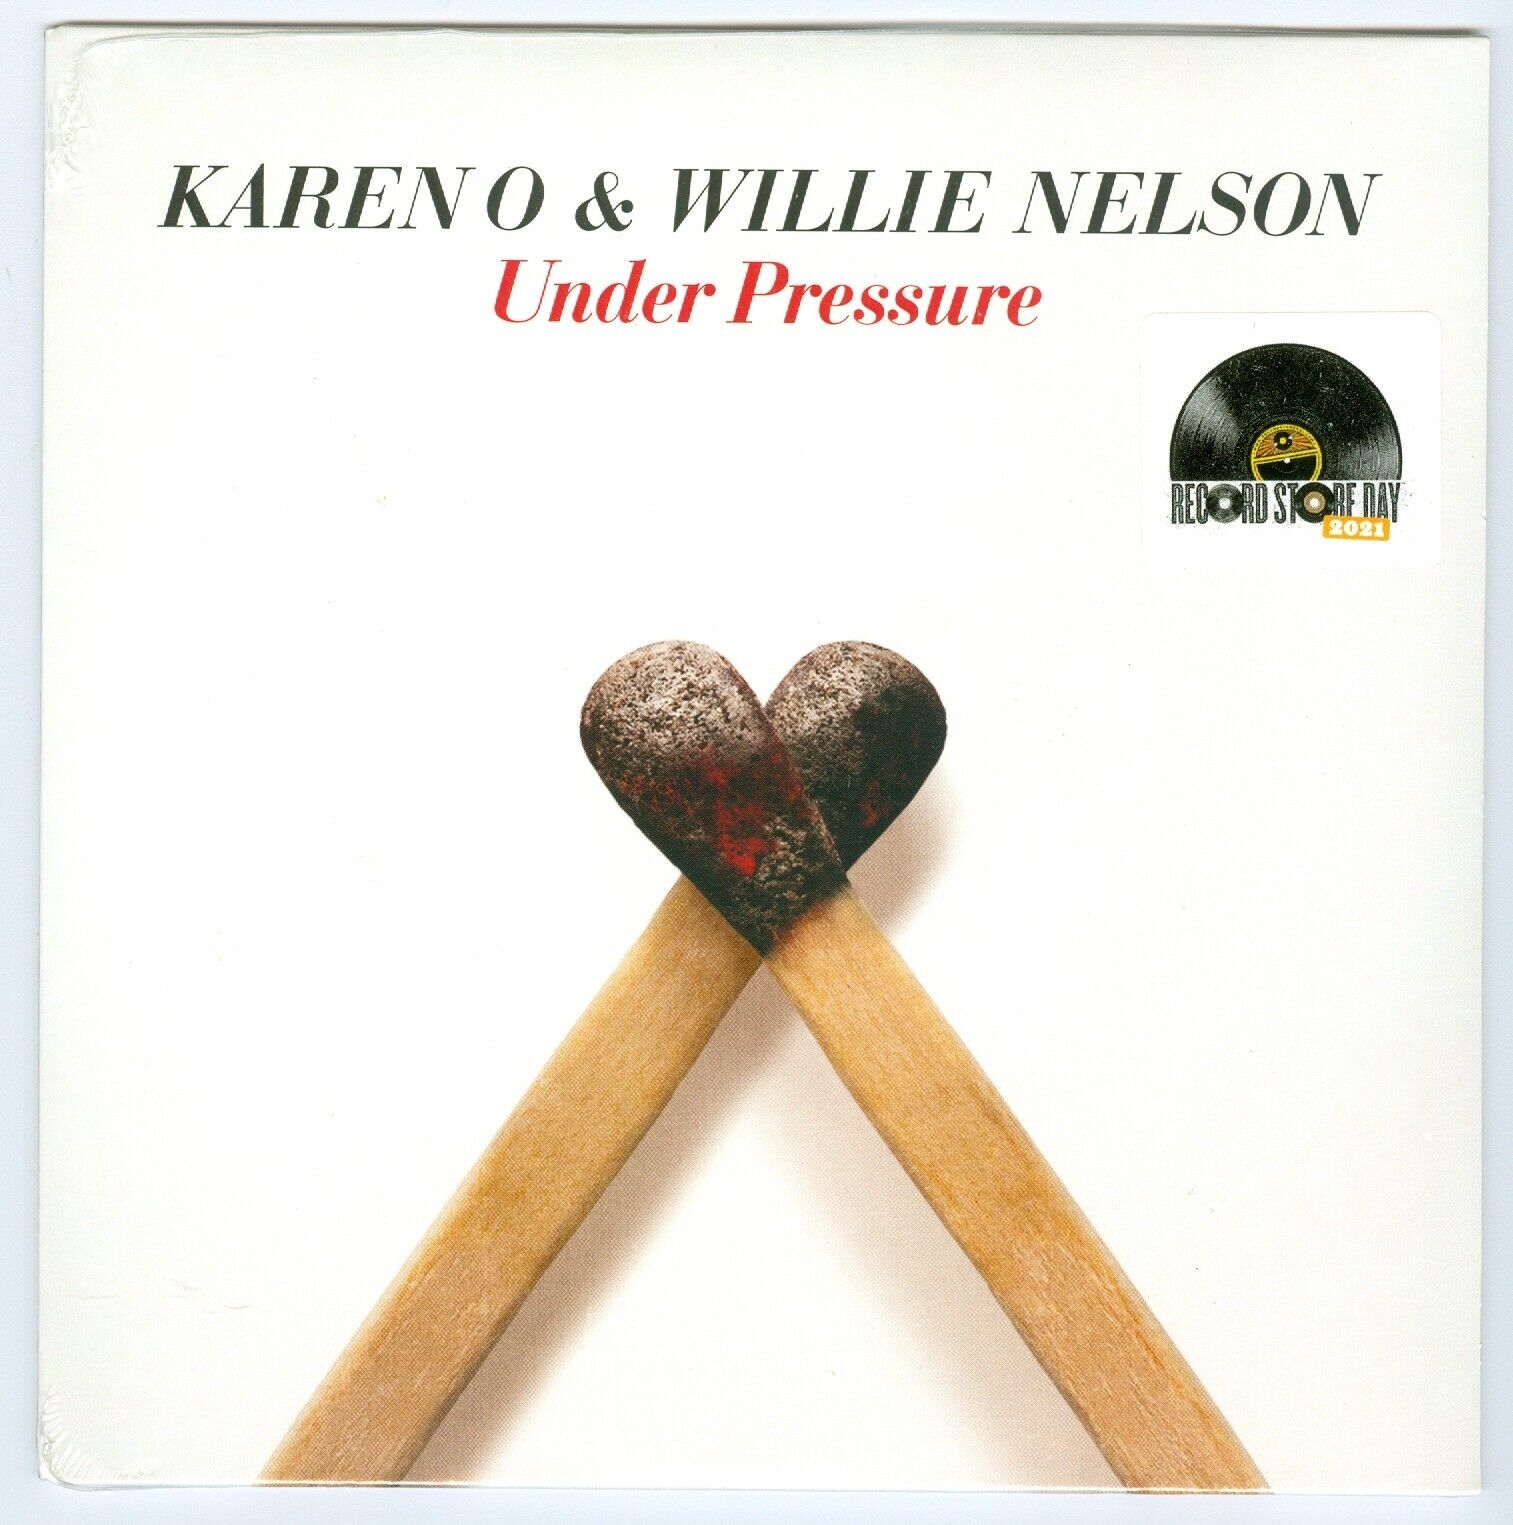 Karen O & Willie Nelson Under Pressure 2021 RSD 7" vinyl record 45rpm NEW SEALED